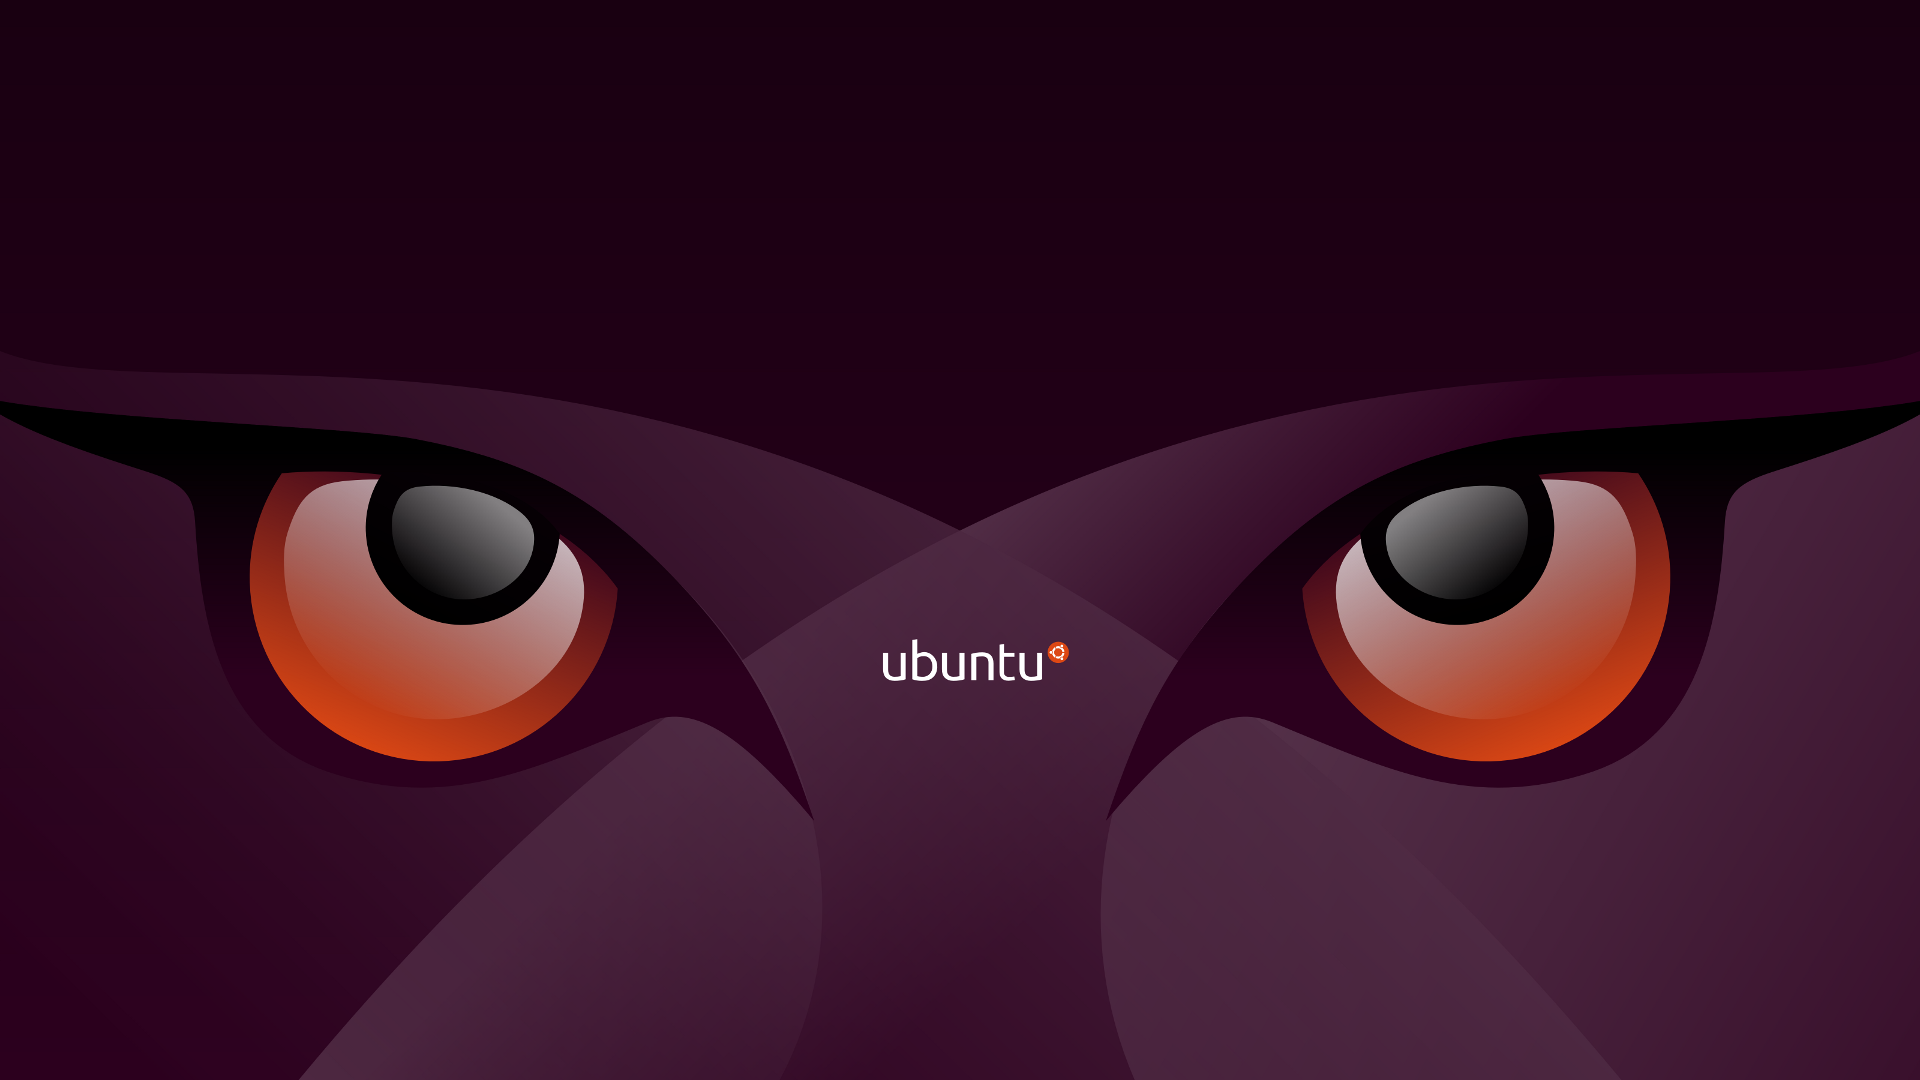 Bạn đang tìm kiếm một hệ điều hành mới và miễn phí để cài đặt trên máy tính của mình? Ubuntu là lựa chọn hoàn hảo! Còn chần chờ gì nữa, hãy tải ngay nền Ubuntu miễn phí để khám phá những tính năng tuyệt vời nhất của hệ điều hành này.